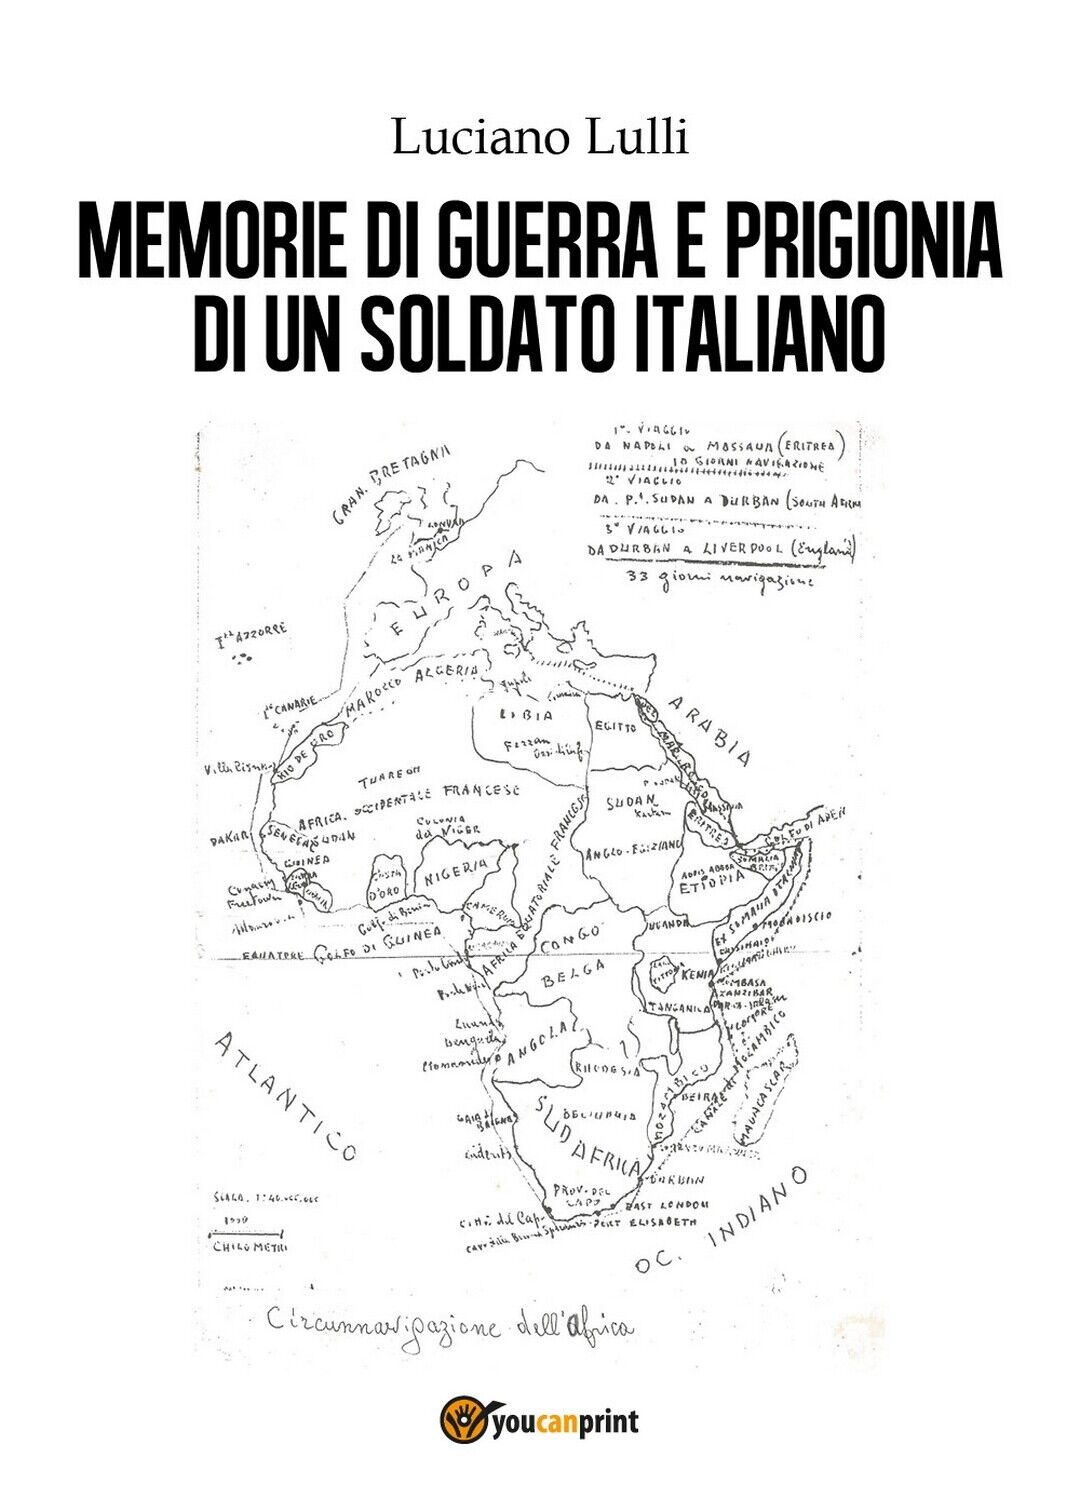 Memorie di guerra e prigionia di un soldato italiano  di Luciano Lulli,  2018